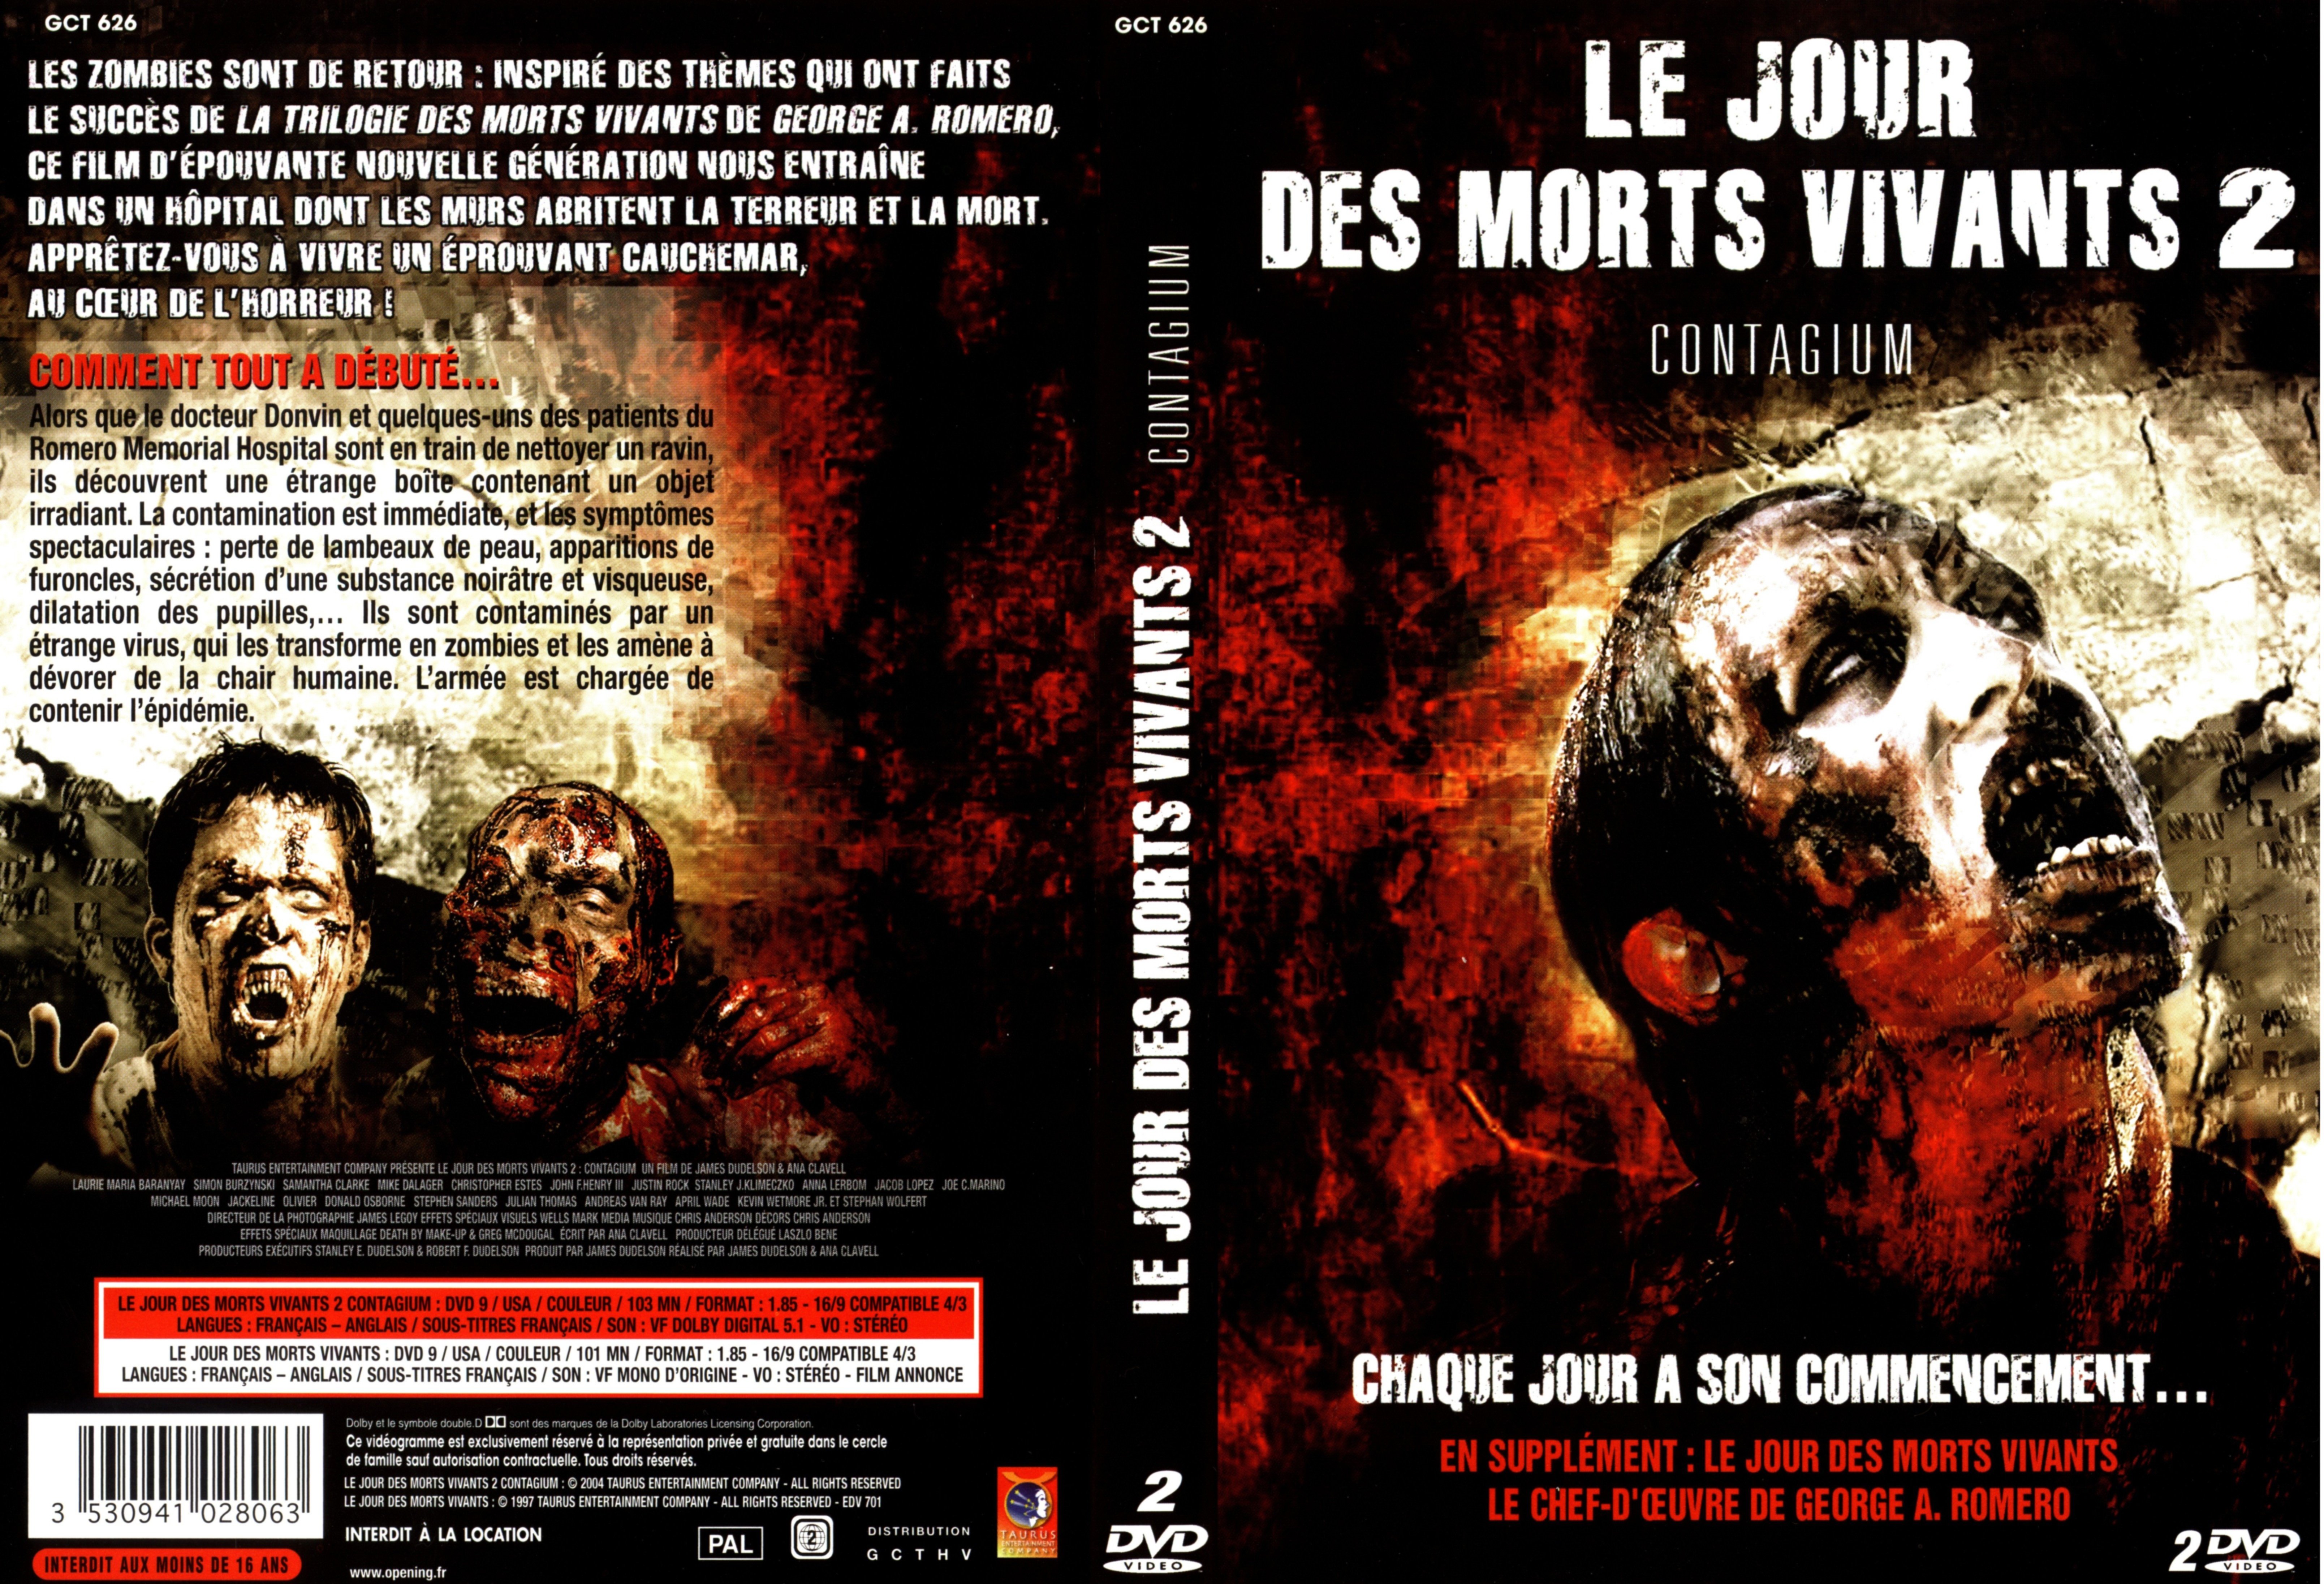 Jaquette DVD Le jour des morts vivants 2 et 1